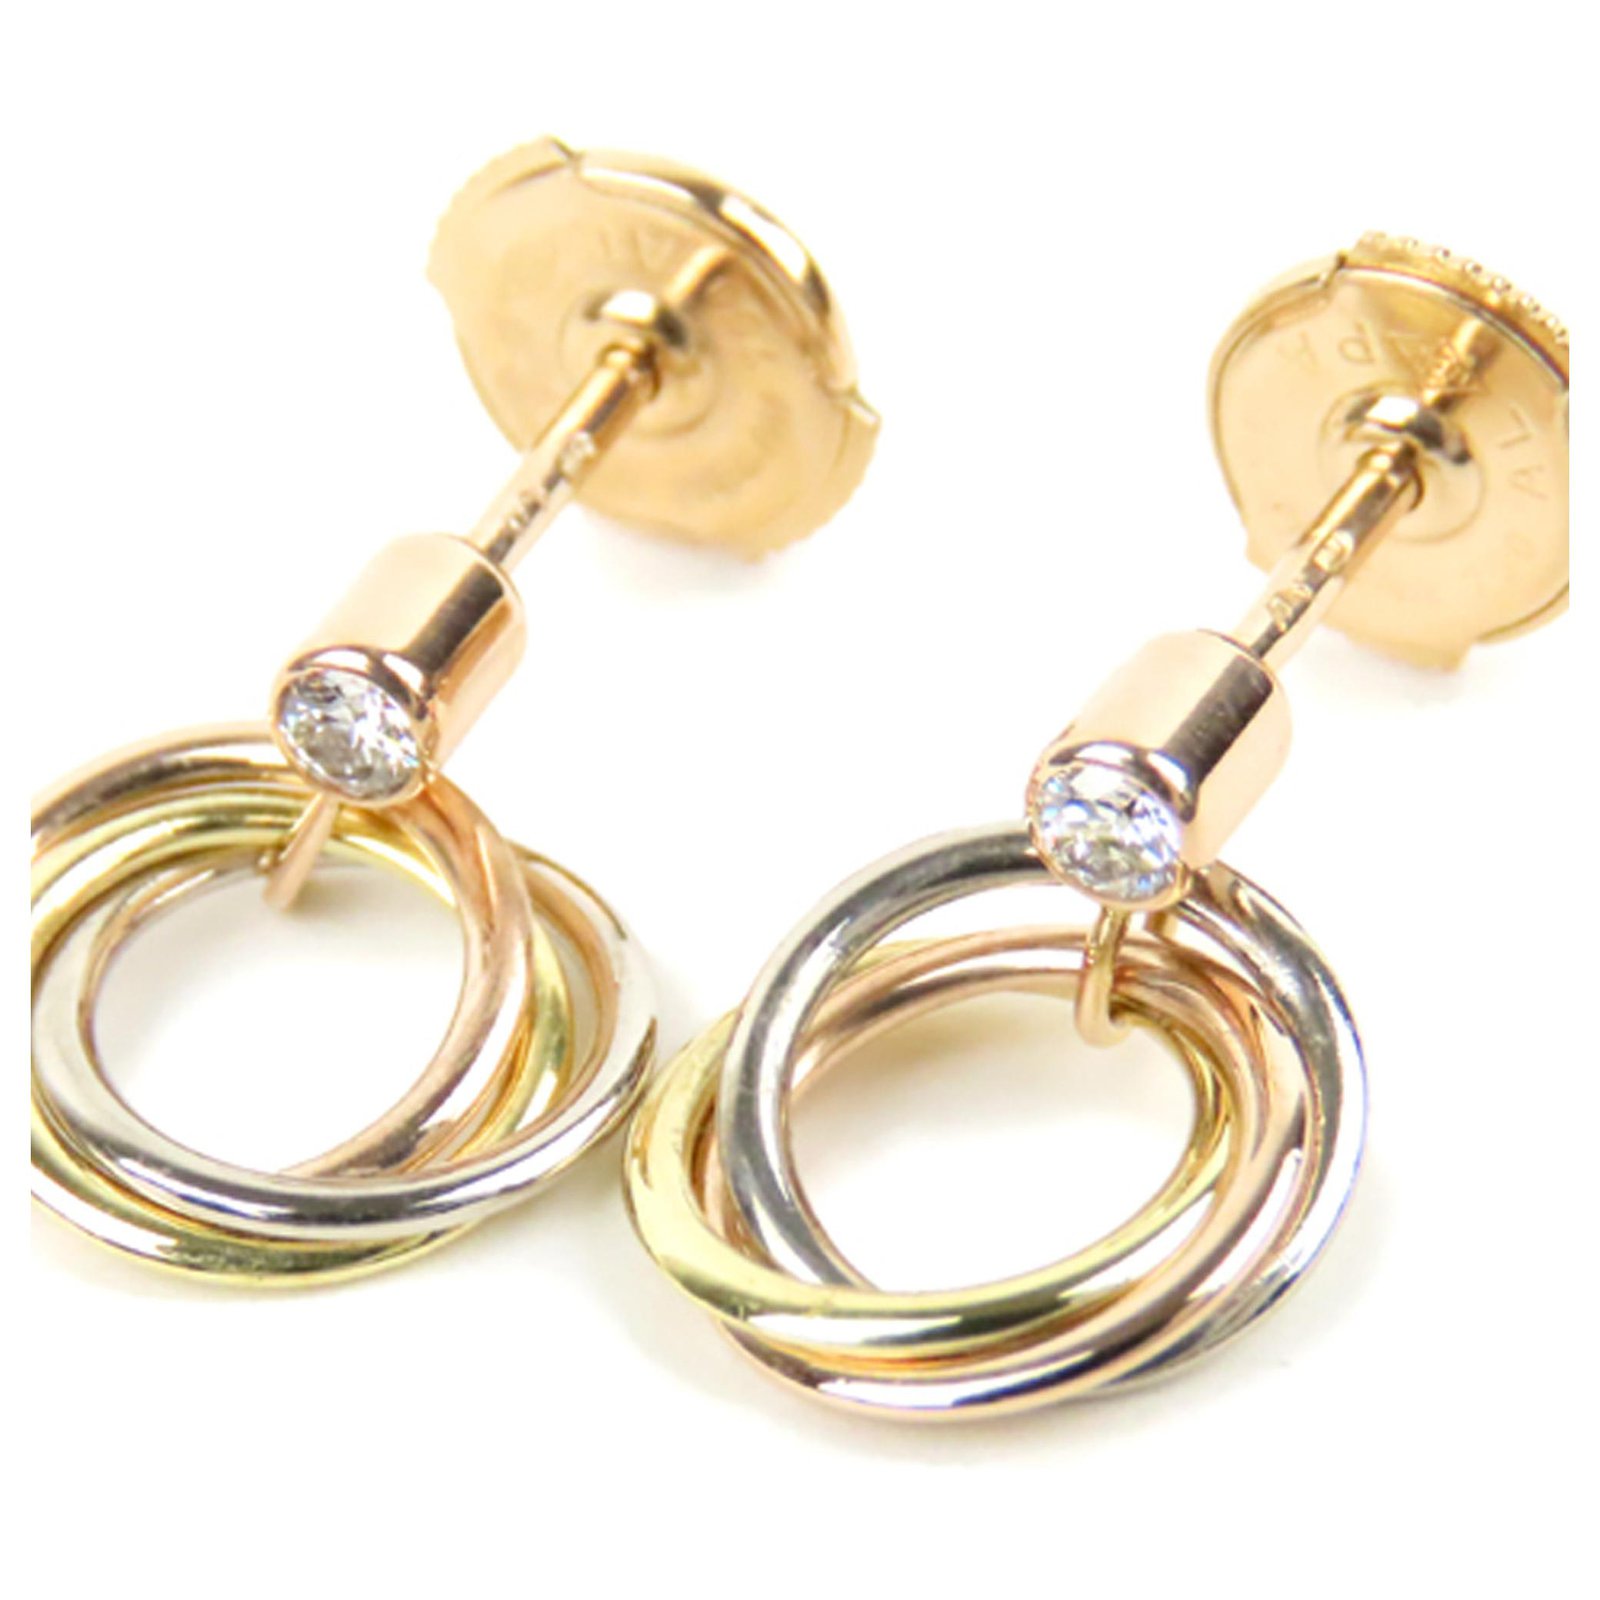 cartier trinity pearl earrings